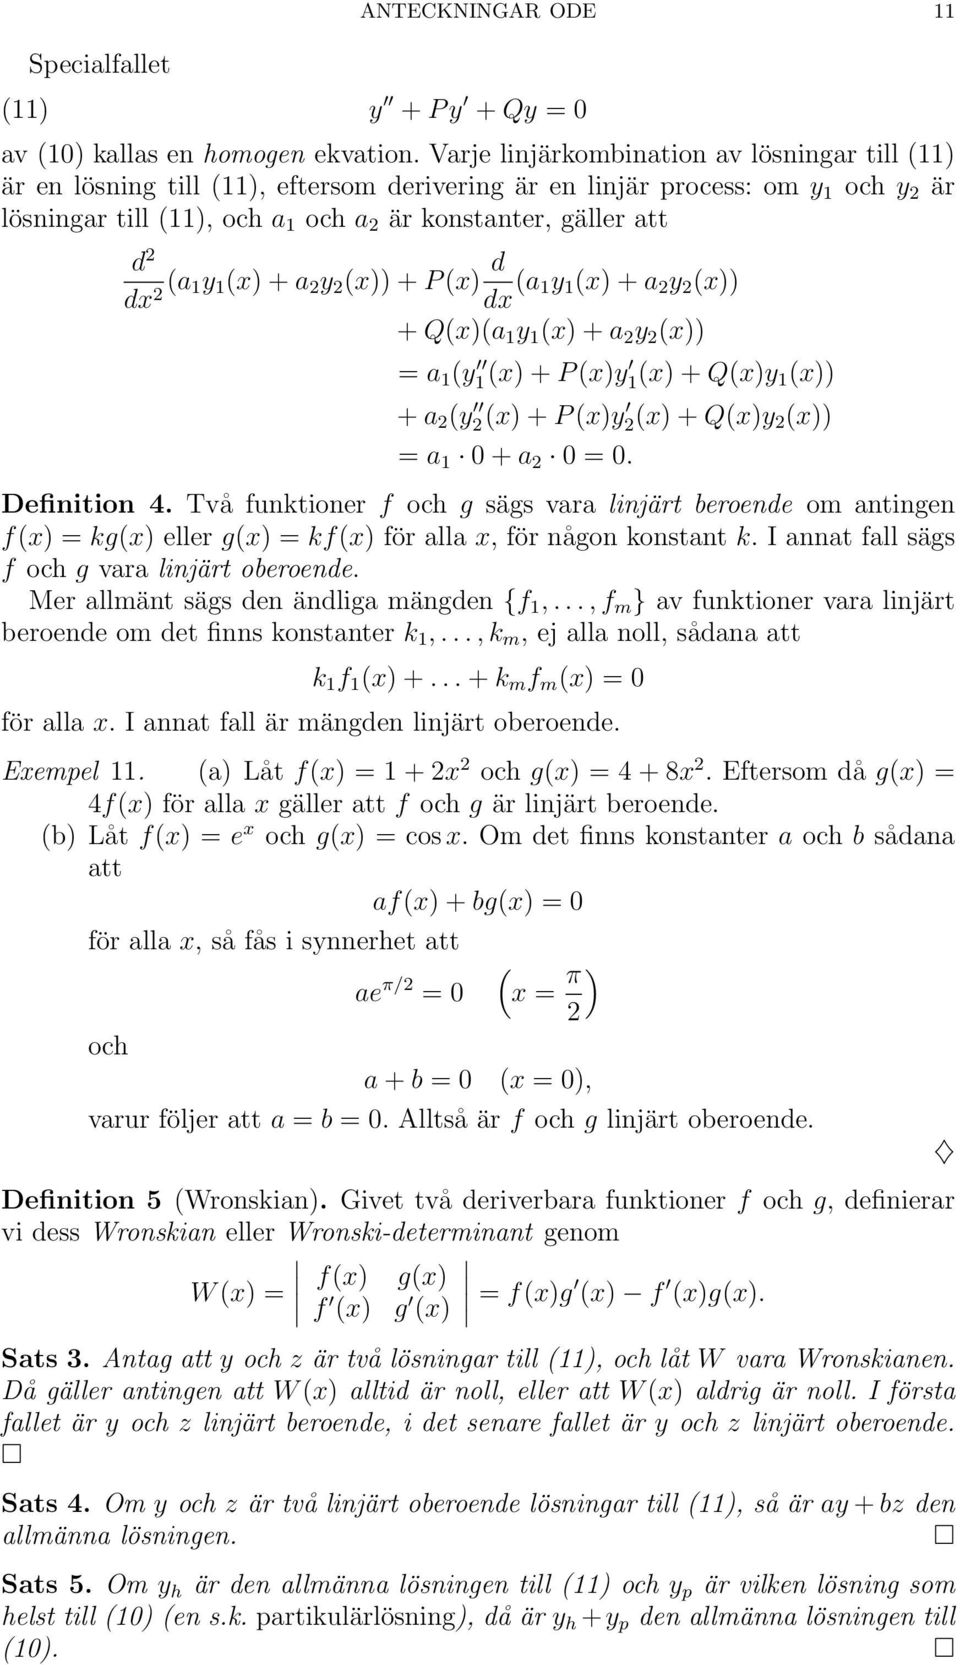 dx 2 (a 1y 1 (x) + a 2 y 2 (x)) + P (x) d dx (a 1y 1 (x) + a 2 y 2 (x)) + Q(x)(a 1 y 1 (x) + a 2 y 2 (x)) = a 1 (y 1(x) + P (x)y 1(x) + Q(x)y 1 (x)) + a 2 (y 2(x) + P (x)y 2(x) + Q(x)y 2 (x)) = a 1 0